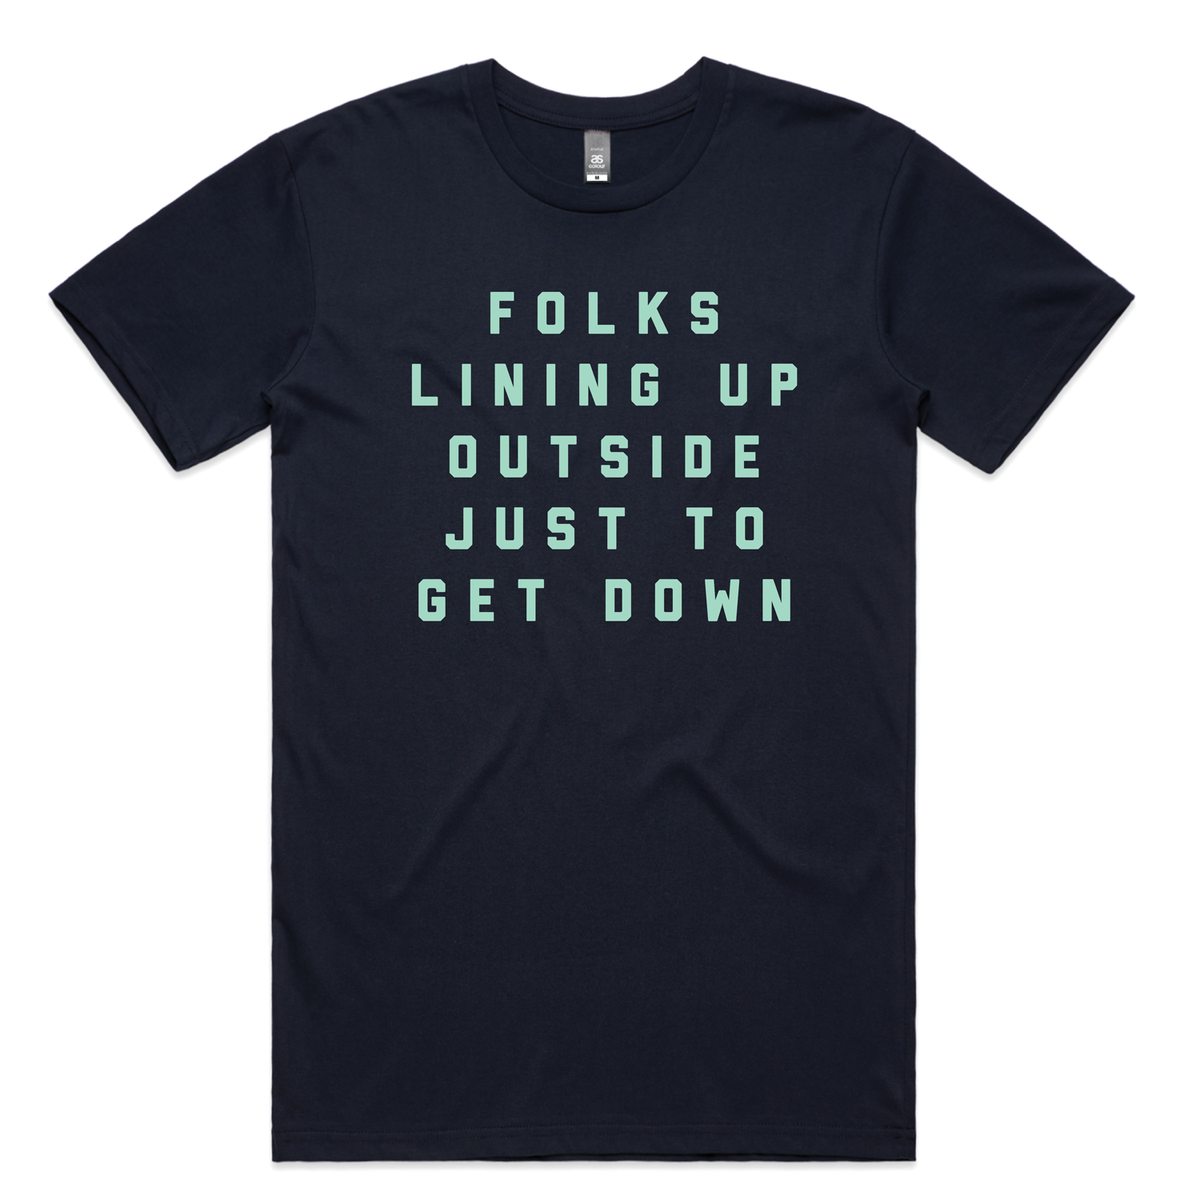 Funky Little Shirt - t-shirt (navy)